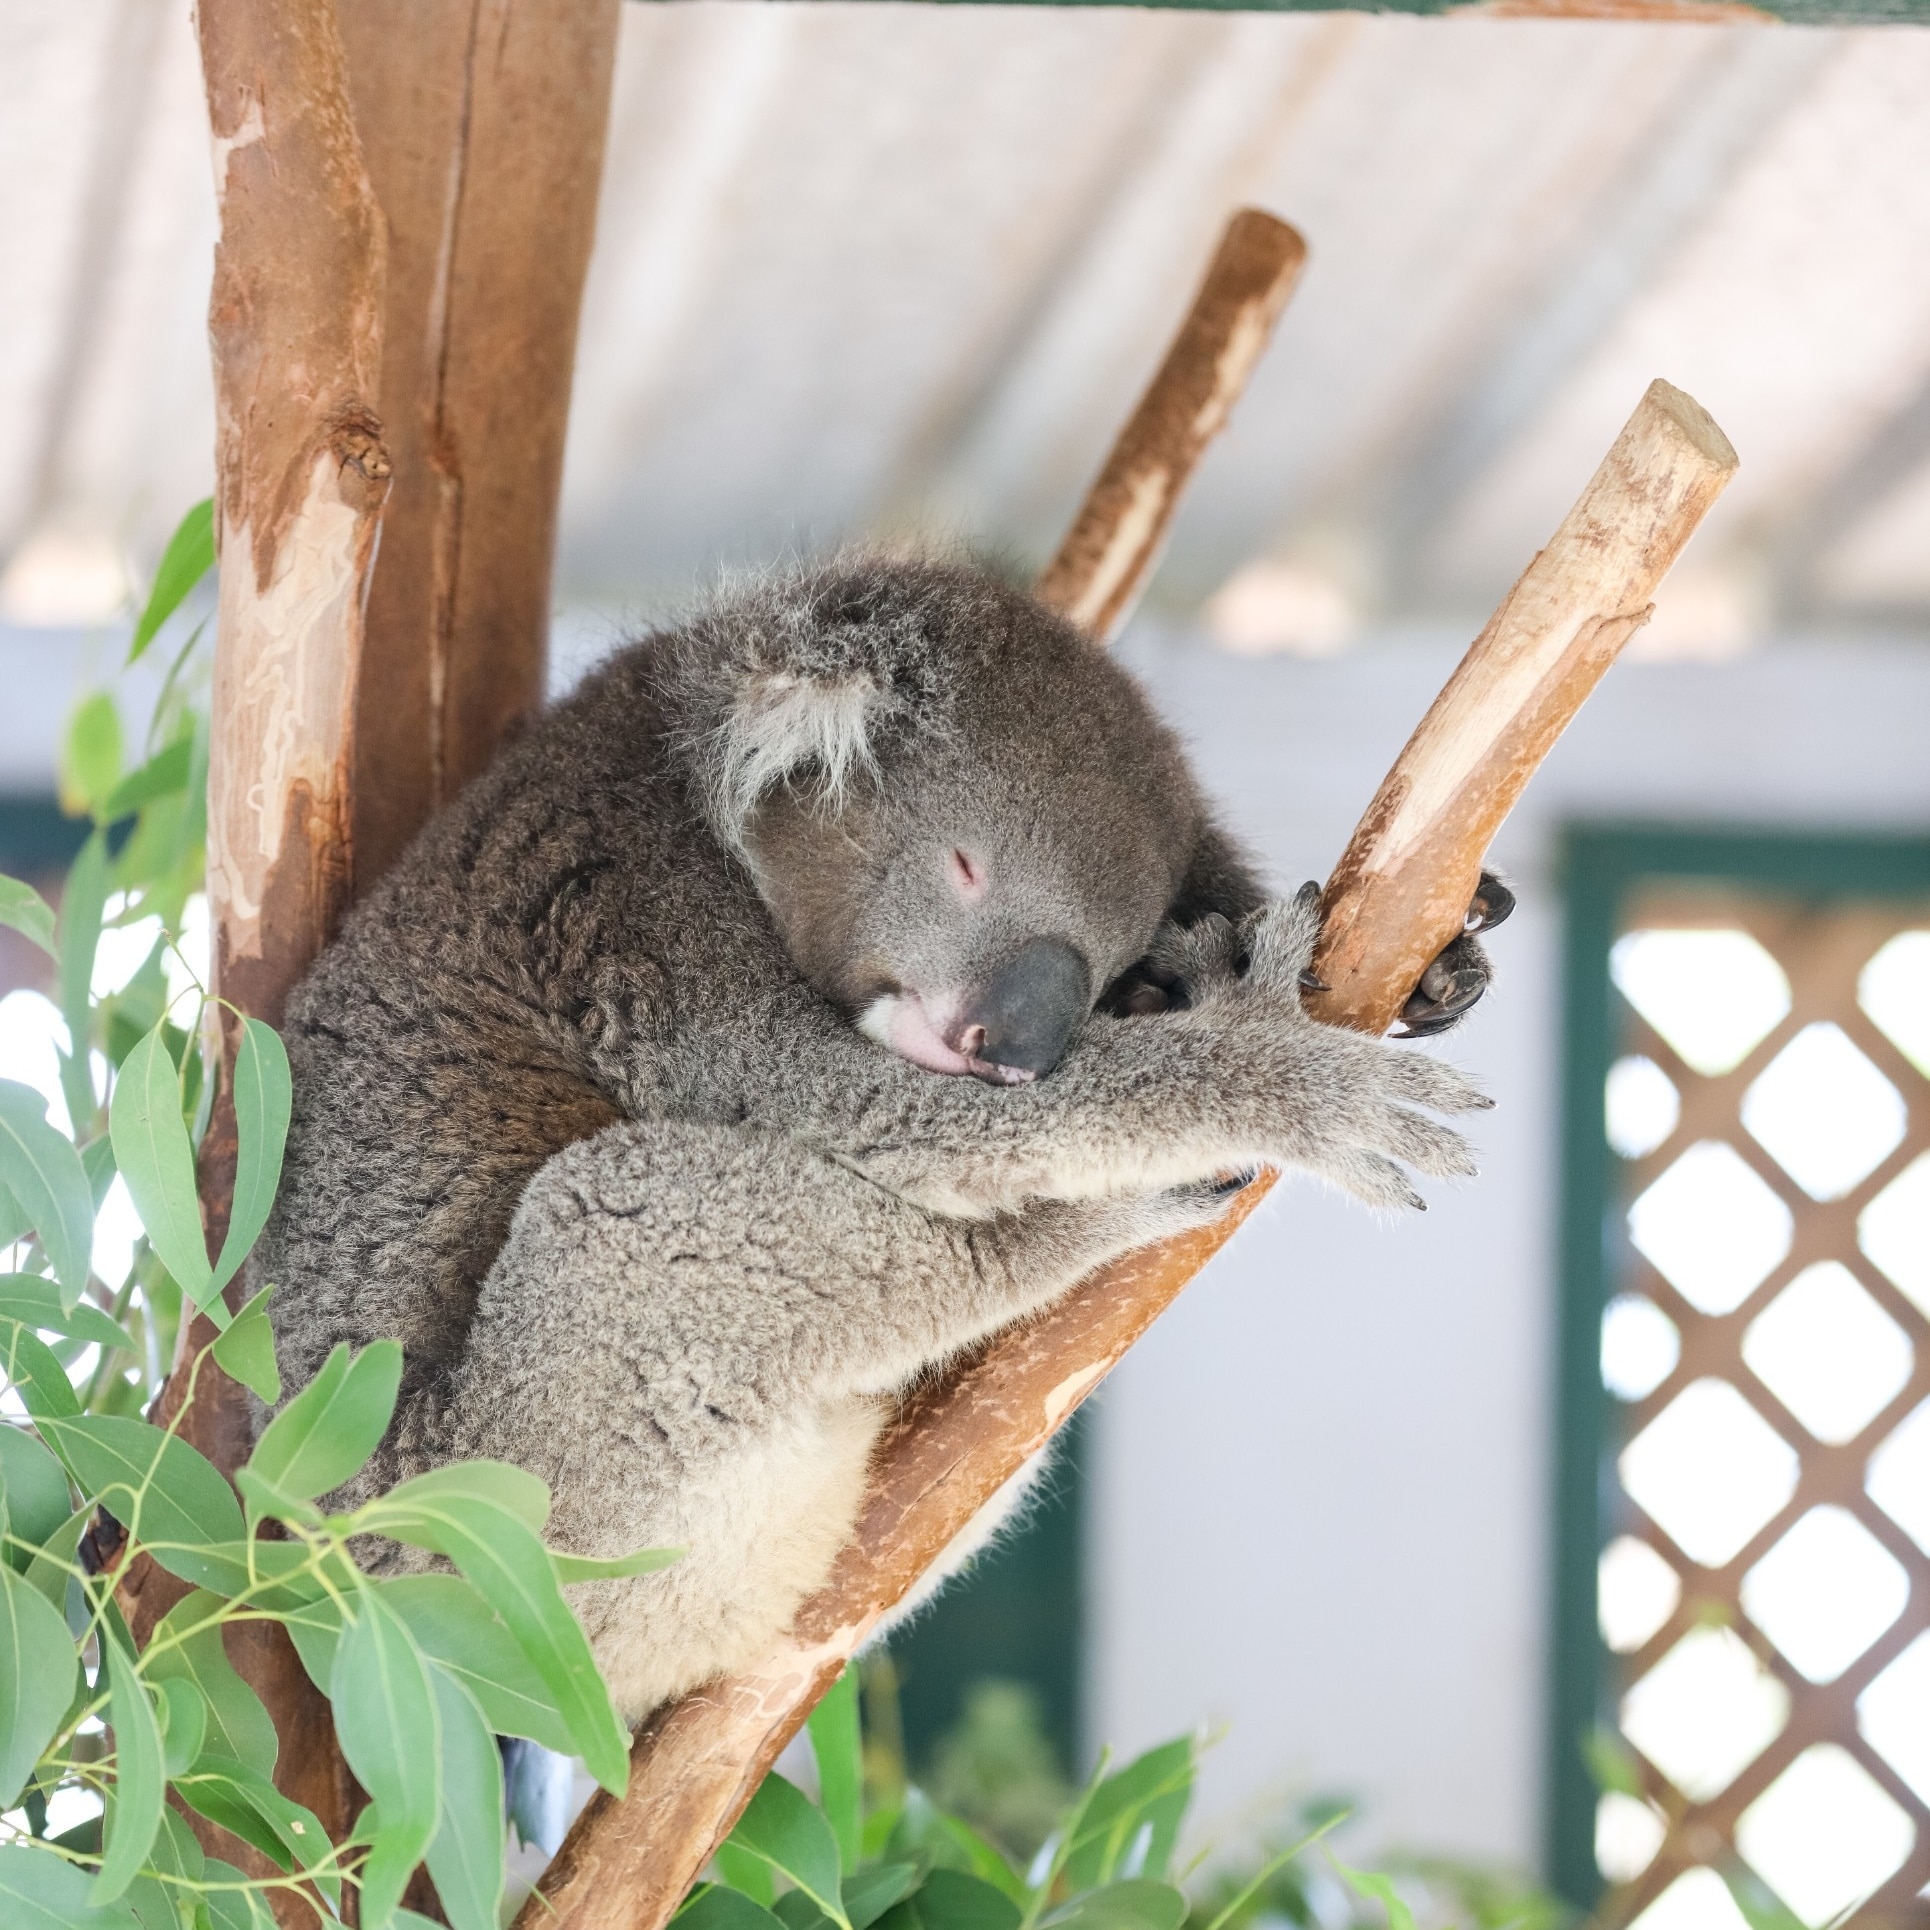 ニュー・サウス・ウェールズ州、ドゥーンサイド、フェザーデール・ワイルドライフパークのコアラ © Destination NSW